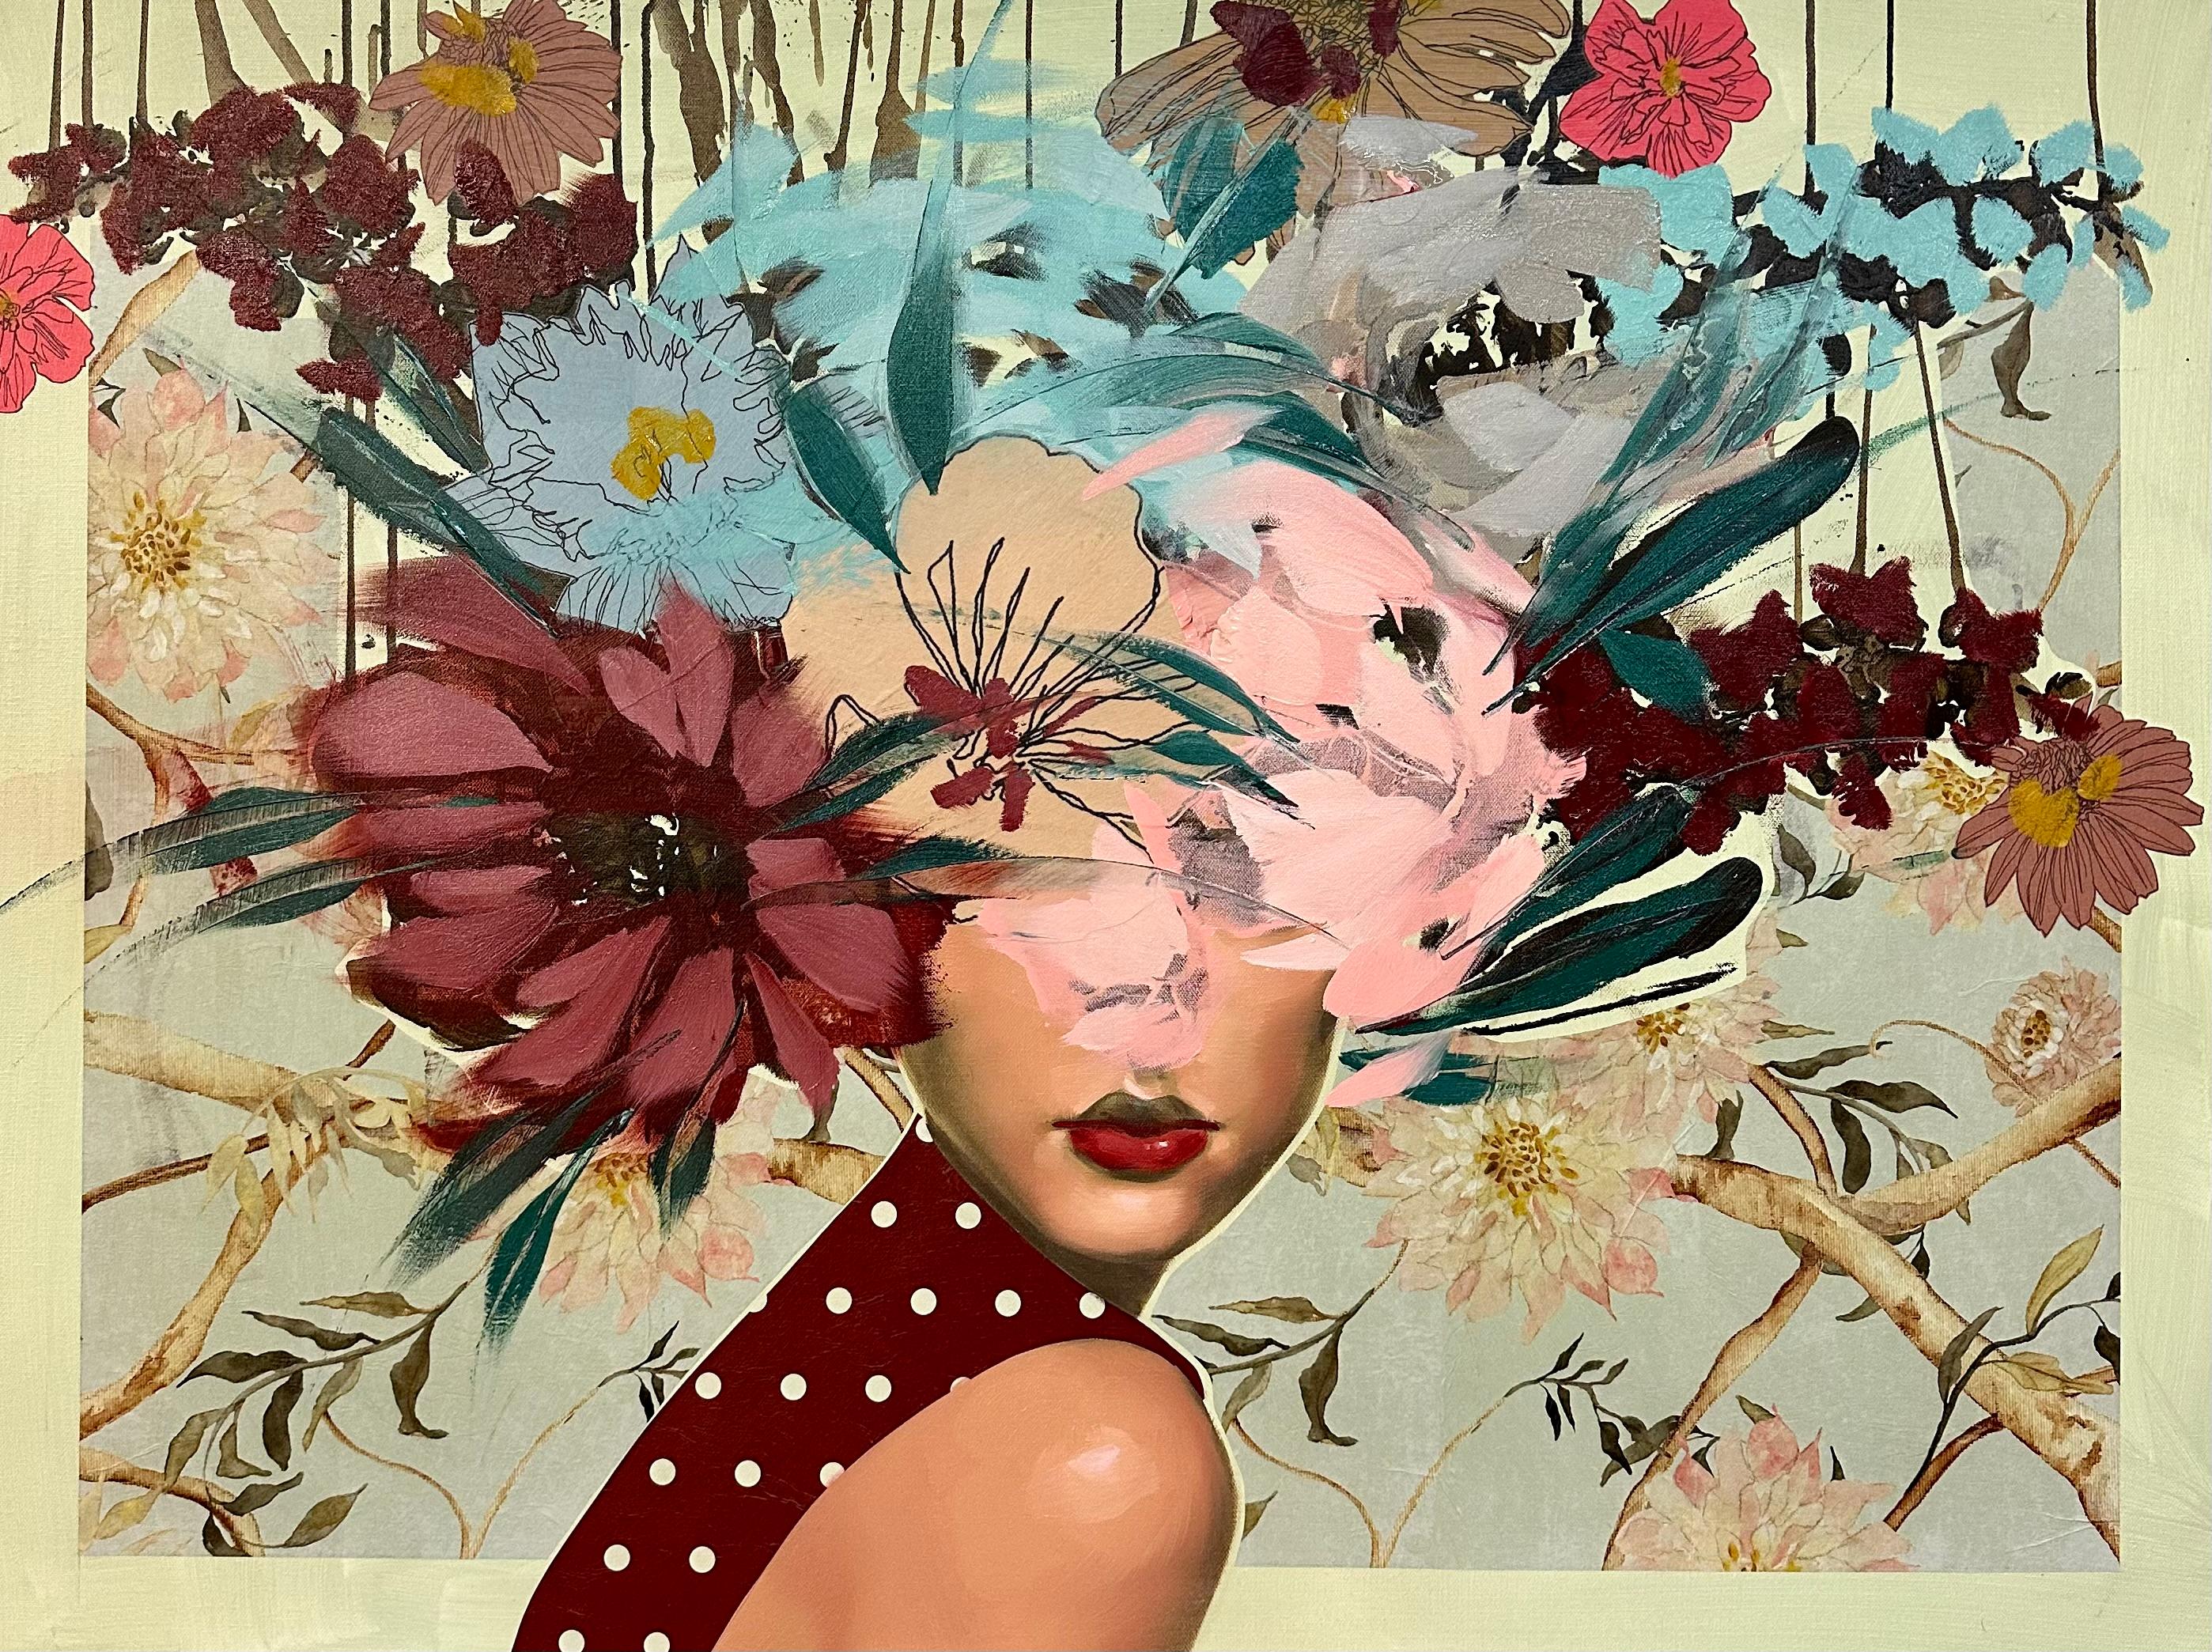 ANNA KINCAIDE
"Dans le jardin
Huile et techniques mixtes sur toile
30 x 40 pouces

Communiquant l'émotion et la narration avec l'aide limitée des expressions faciales de son personnage, Anna Kincaide crée des cascades de fleurs qui recouvrent ses